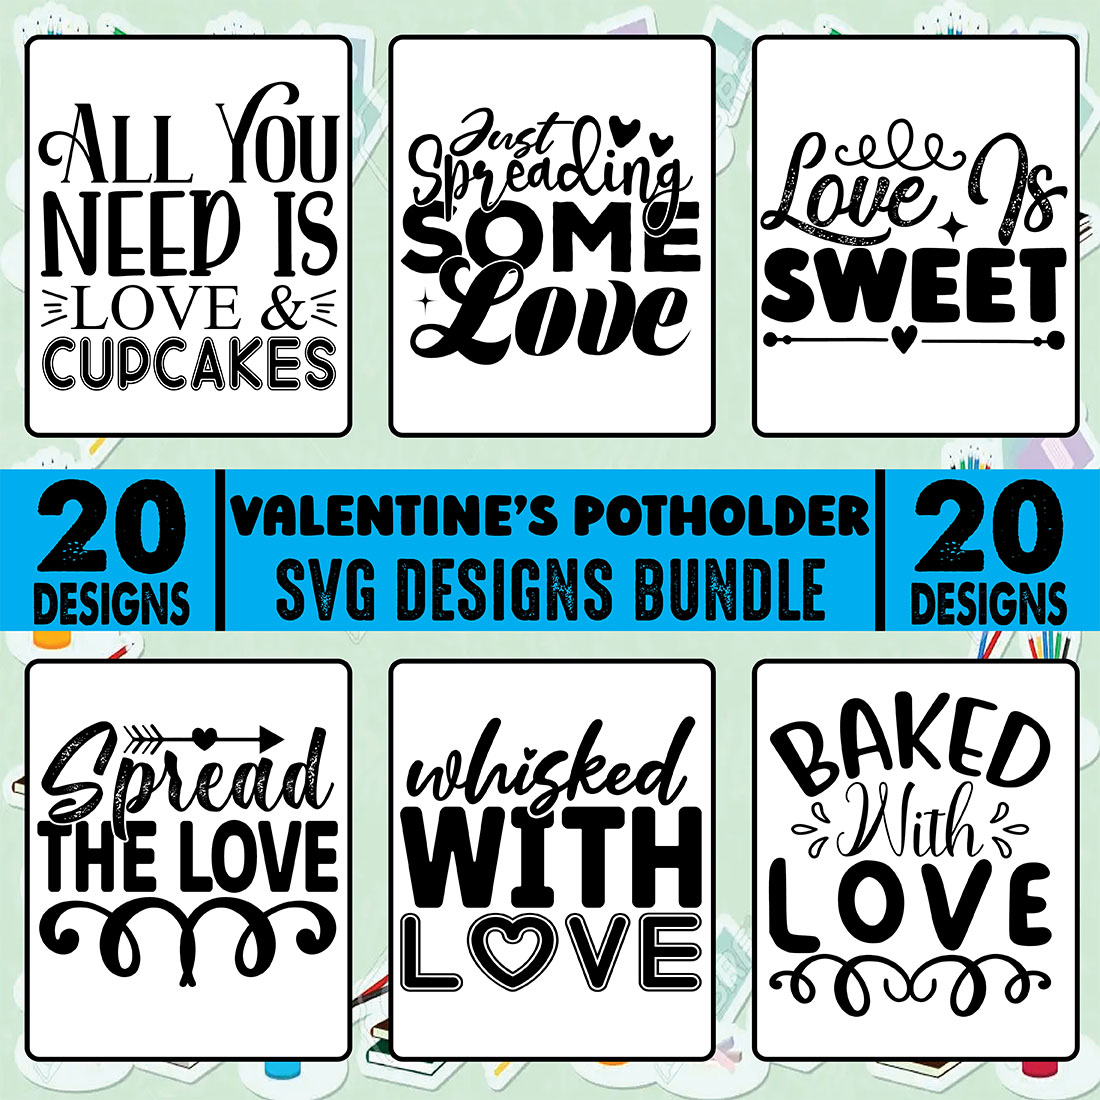 20 Valentines Potholder SVG Design Bundle main cover